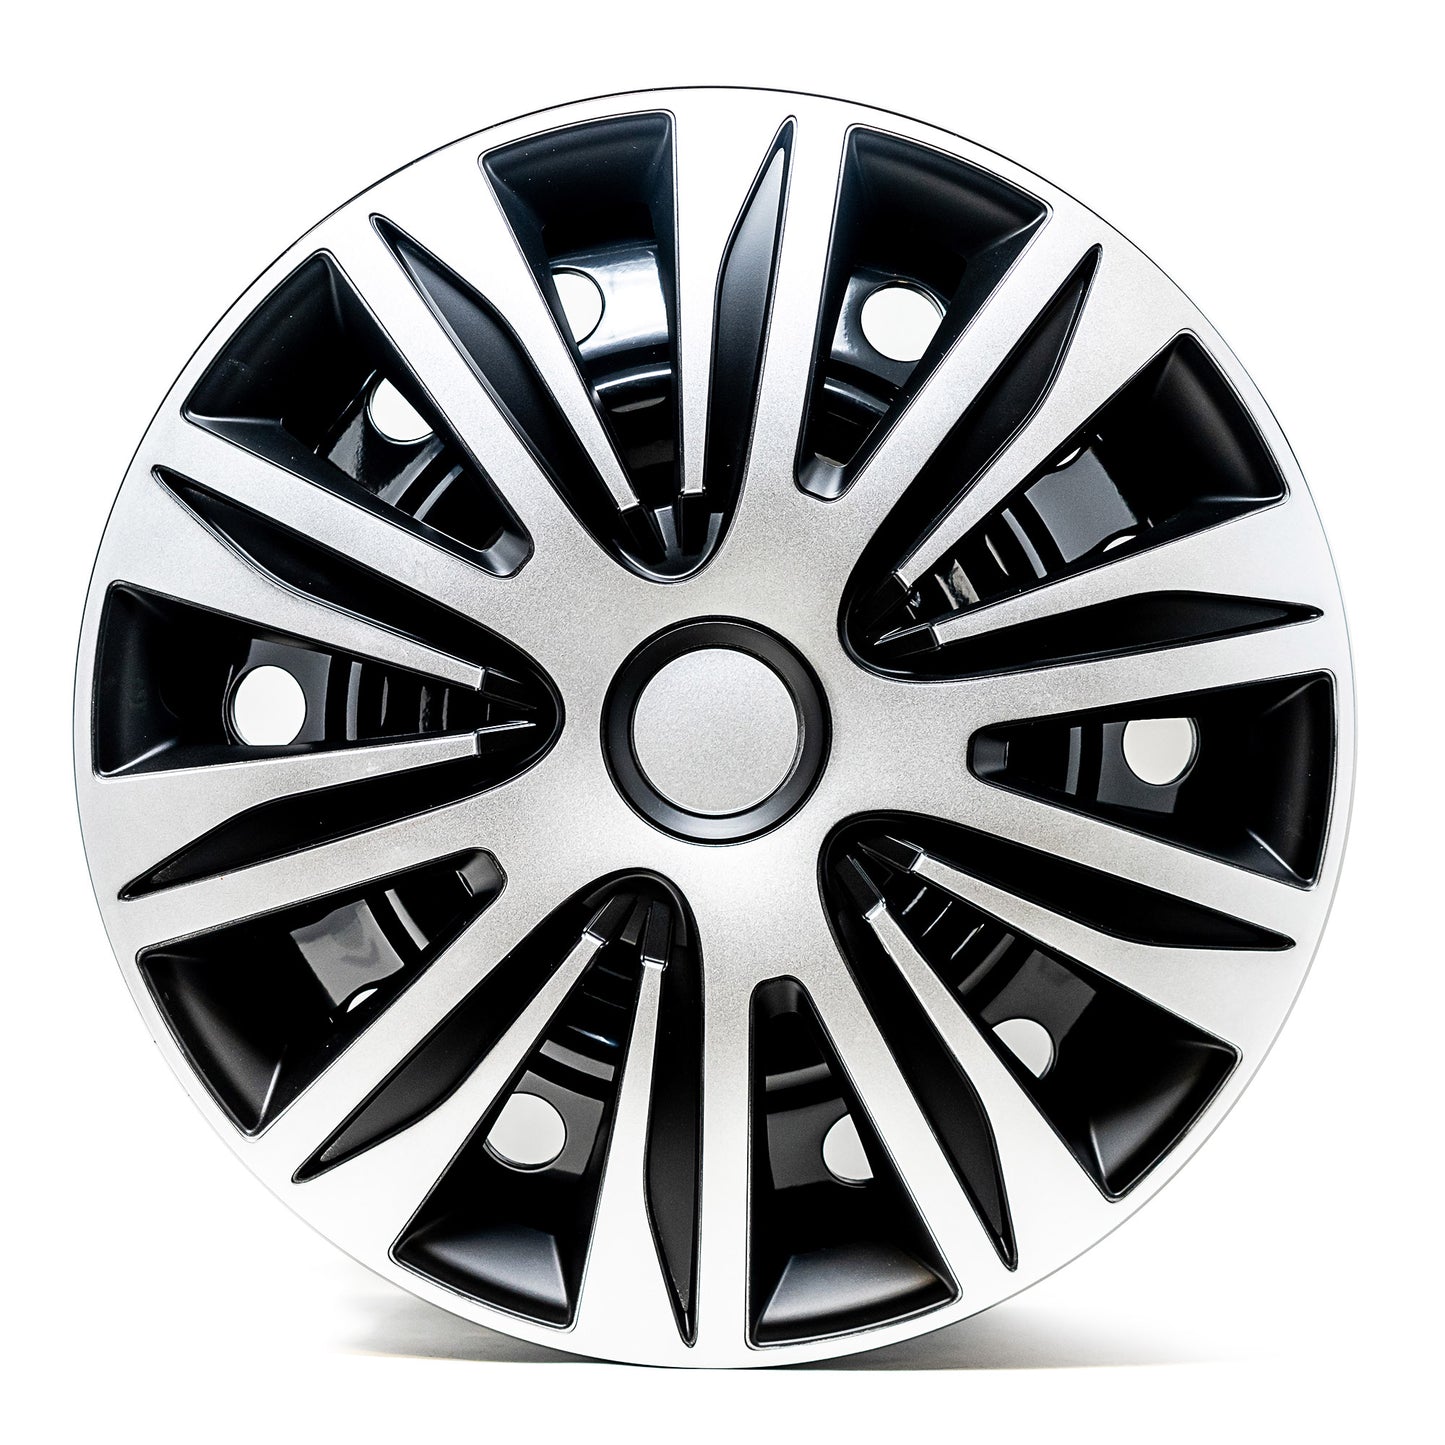 Zyon Wheel Cover Kit - Silver & Black (4 Pack)